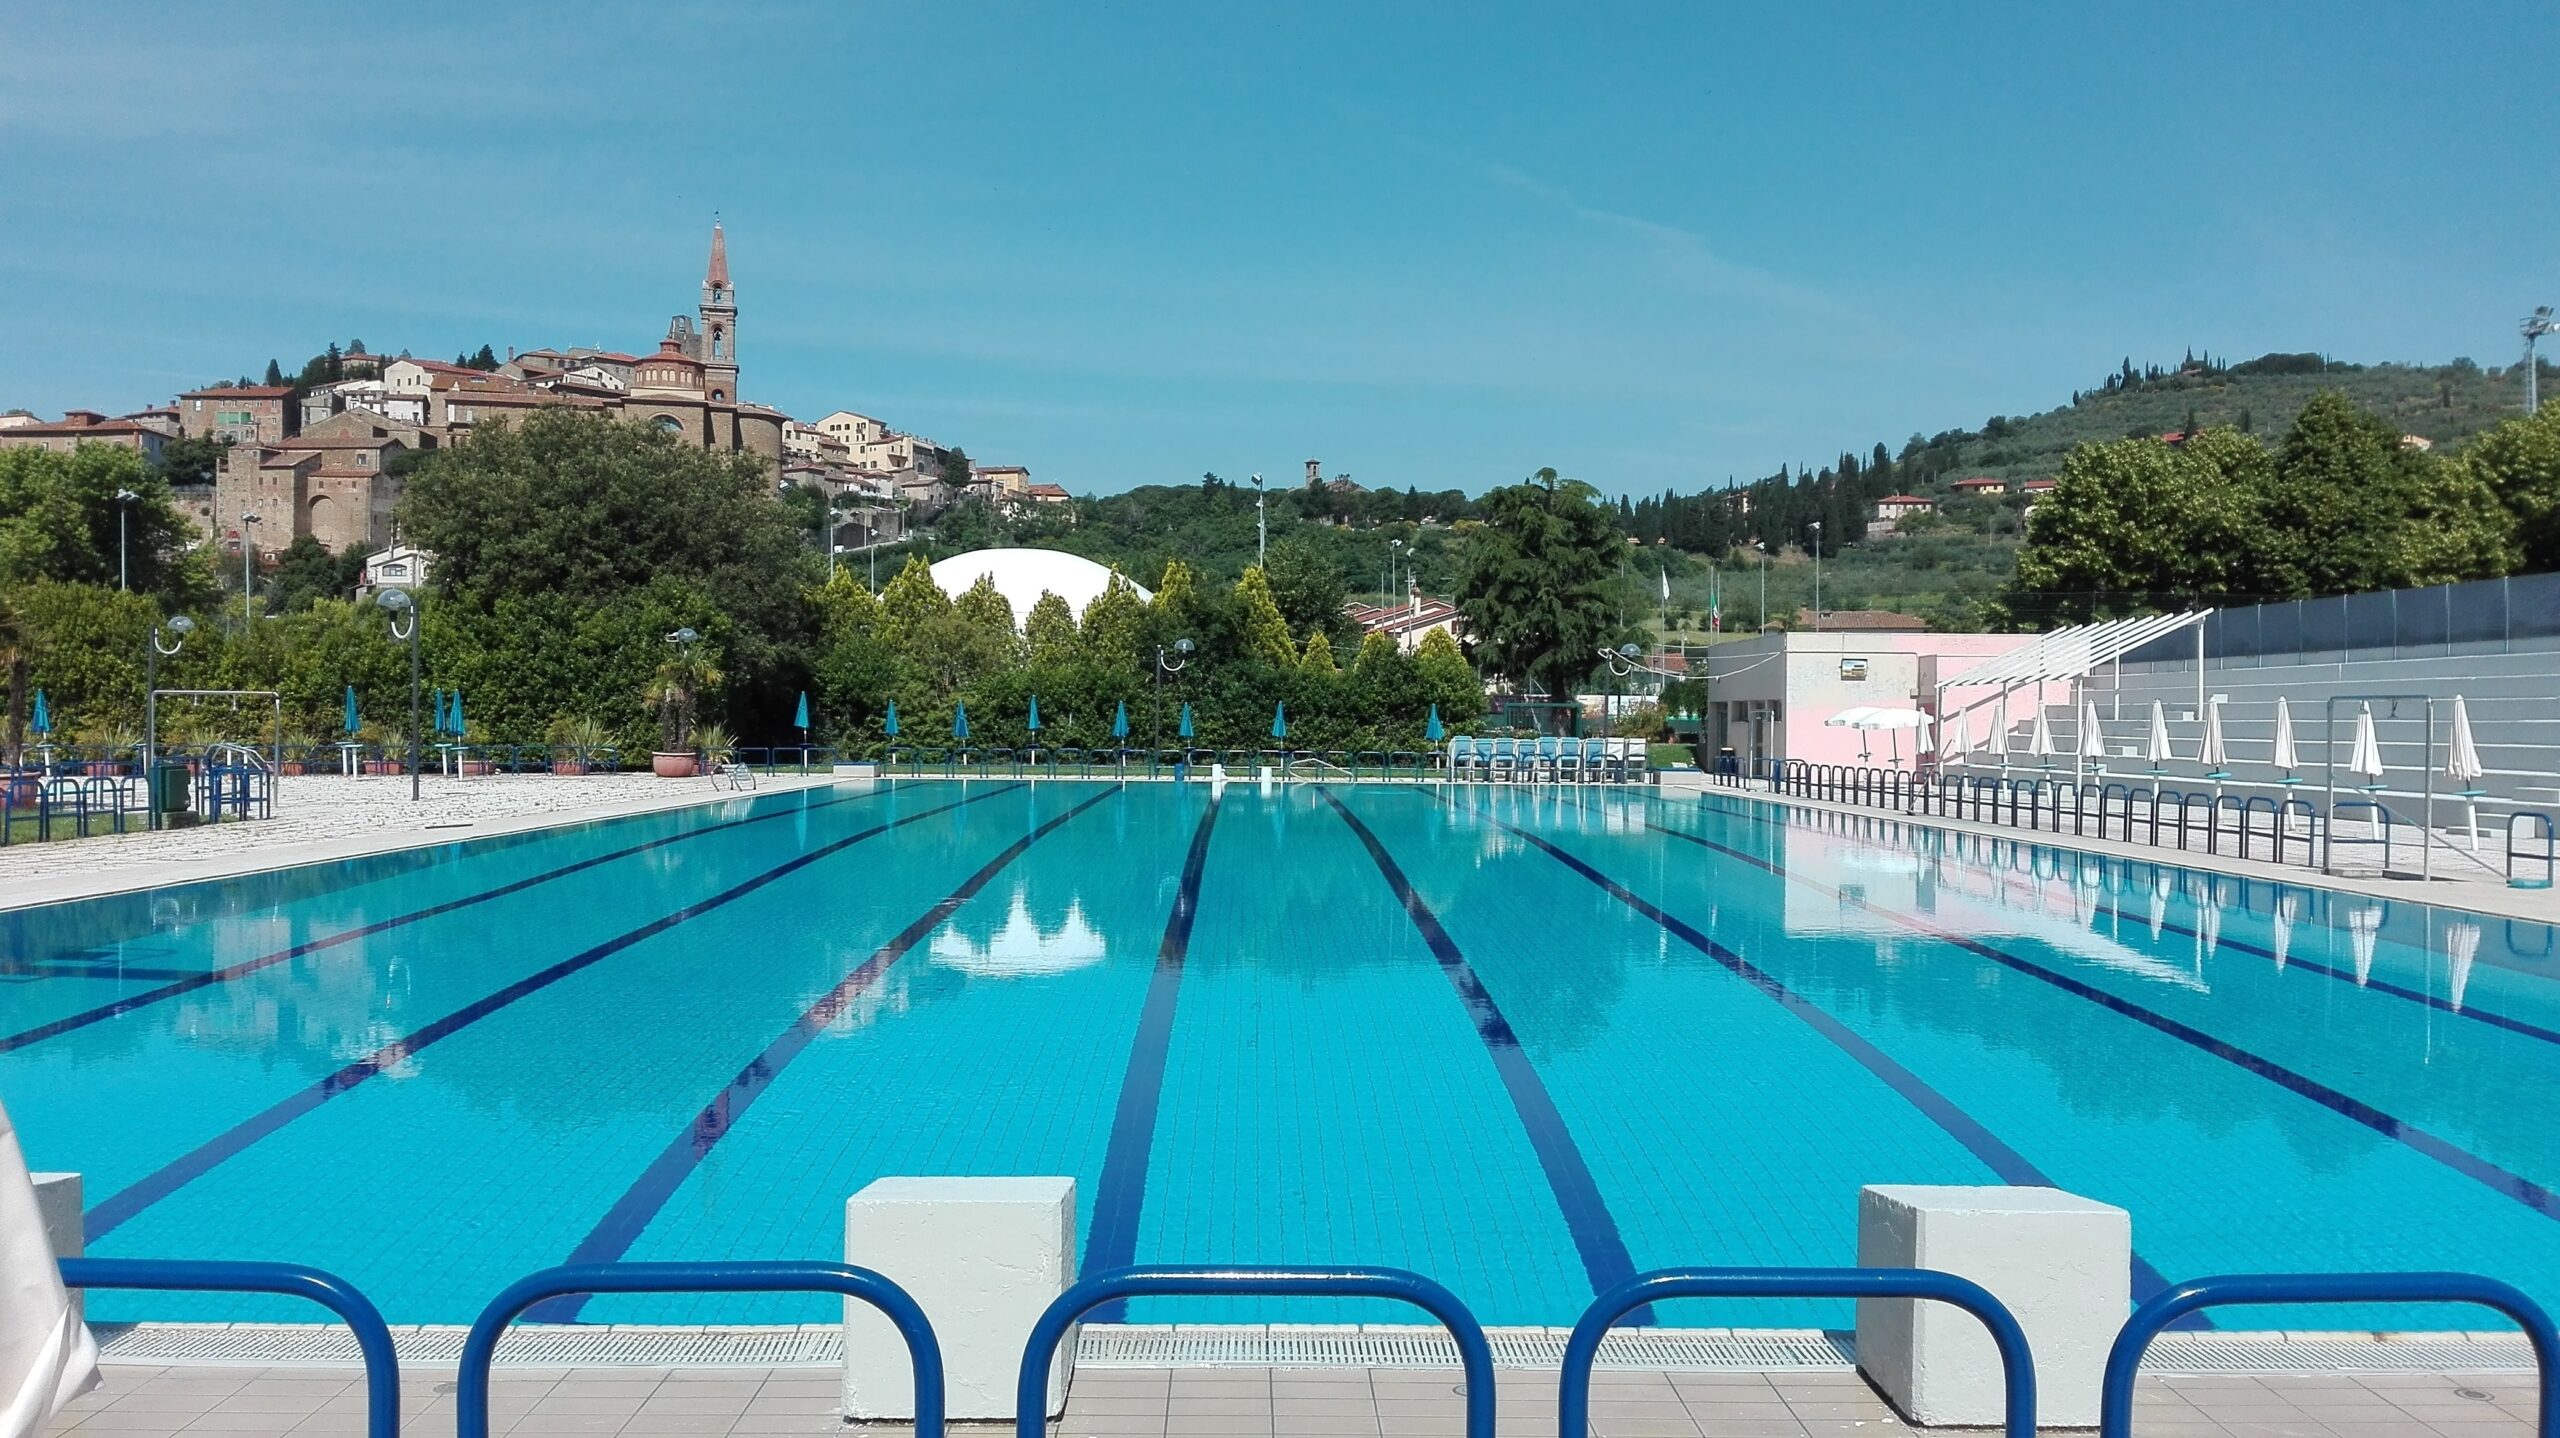 Domani riprende l’attività della piscina comunale di Castiglion Fiorentino